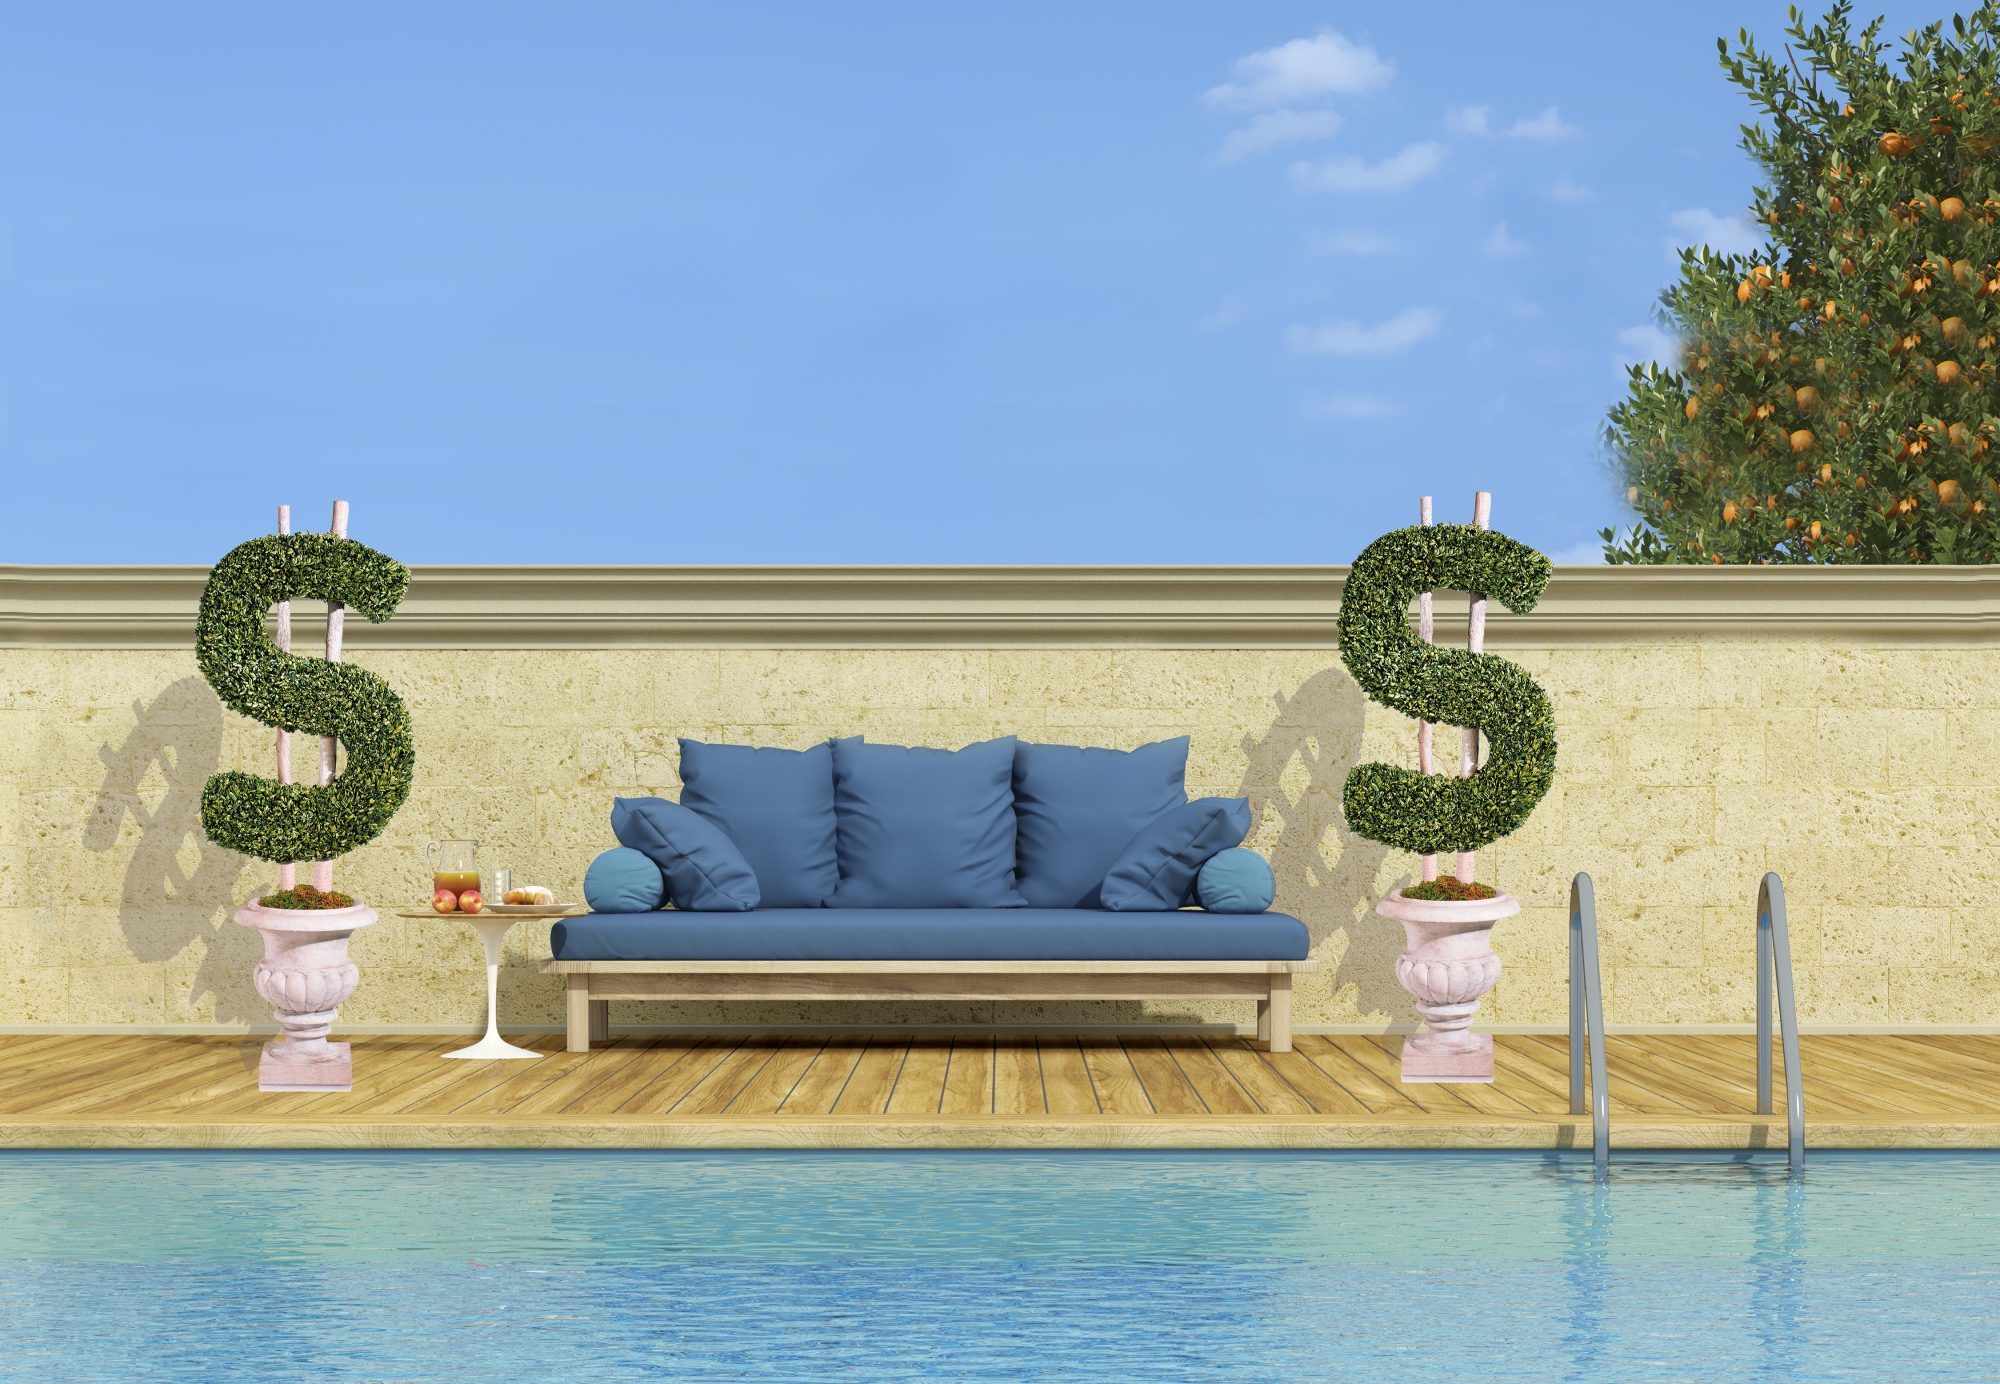 Cuánto valor podría agregar una piscina a su casa, según un nuevo estudio